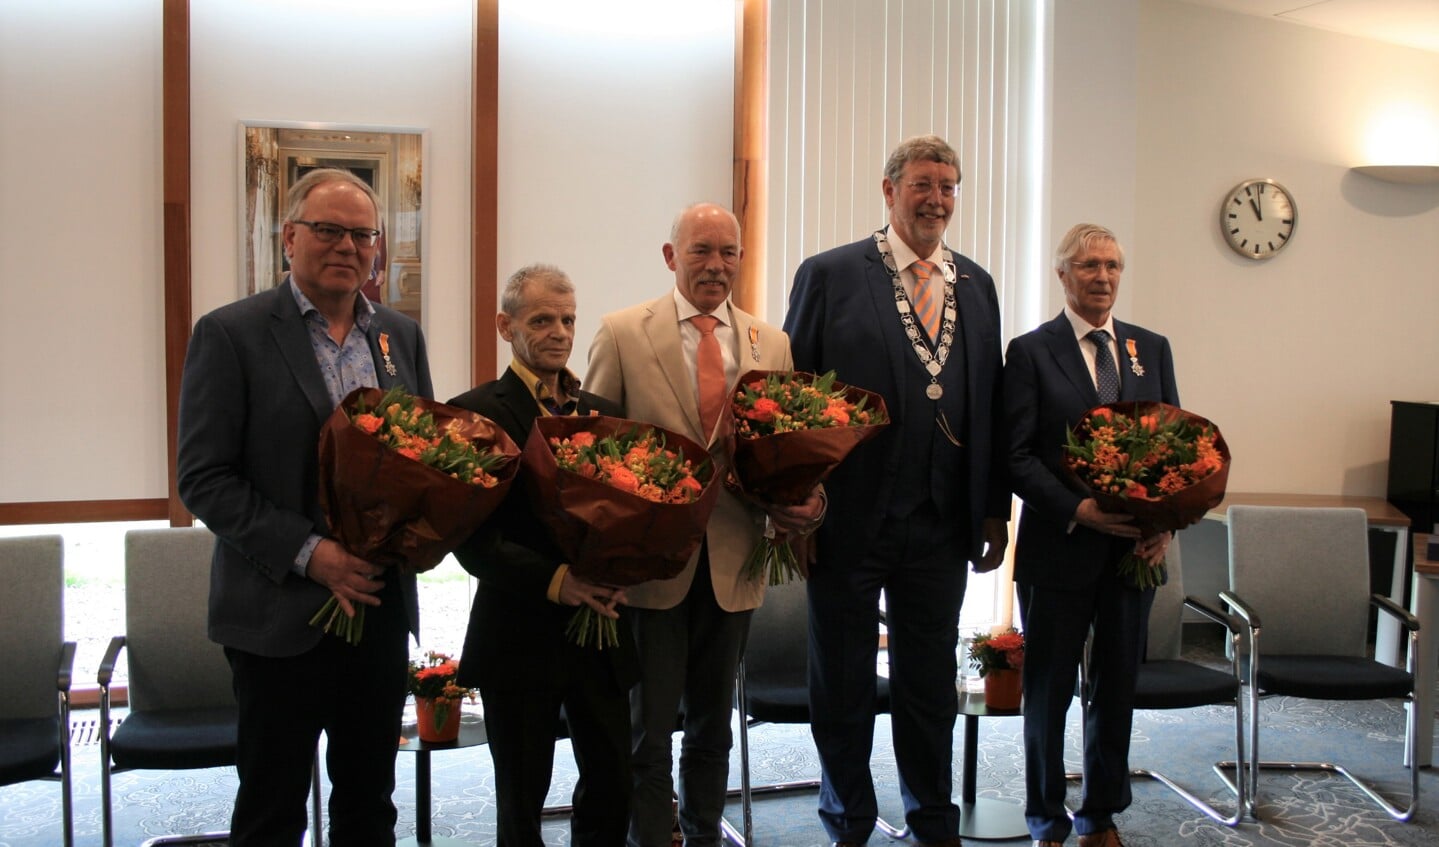 De gedecoreerden tijdens het fotomoment: (vlnr) Evert Achterberg, Sjaak Baas, Rens van den Boom, burgemeester Roland van Schelven en Wim Coenen